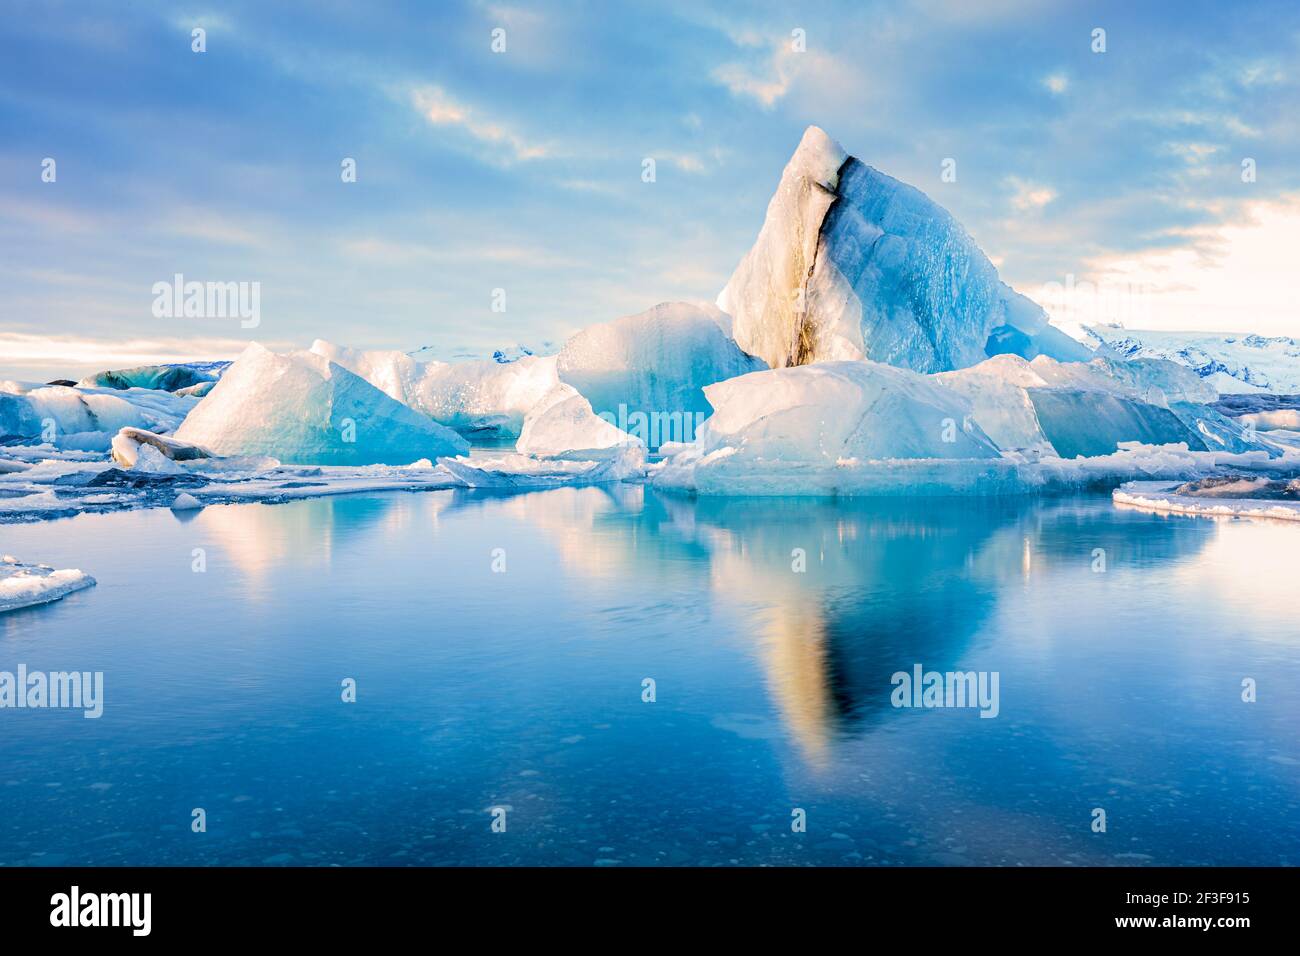 Eisberge schweben auf der Jokulsarlon Gletscherlagune mit Berggipfeln, die vom warmen Sonnenaufgangslicht beleuchtet werden, in Island. Stockfoto